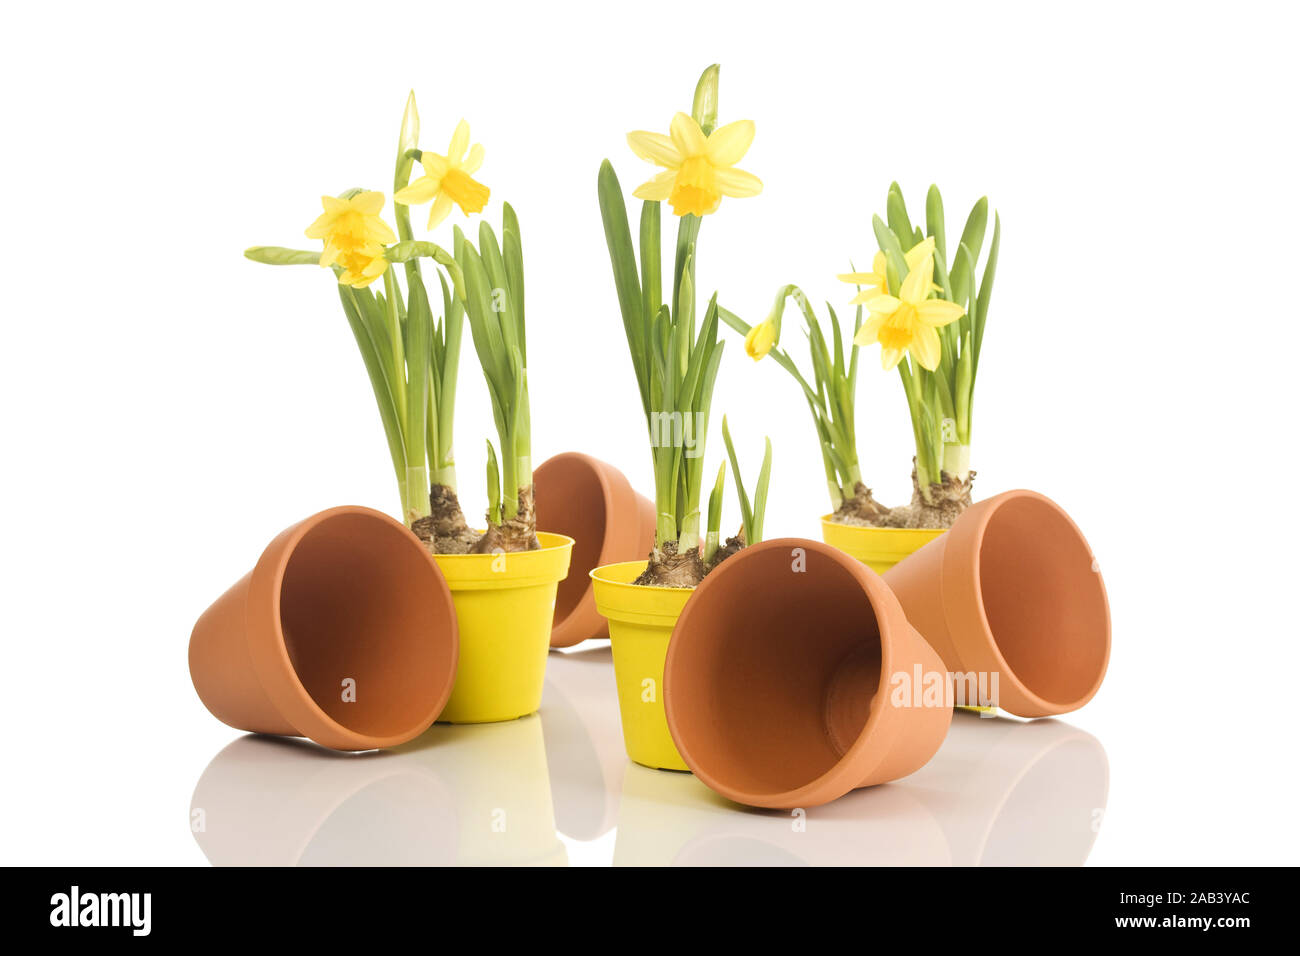 Narzissen mit Blumentöpfen |Daffodils with flower pots| Stock Photo